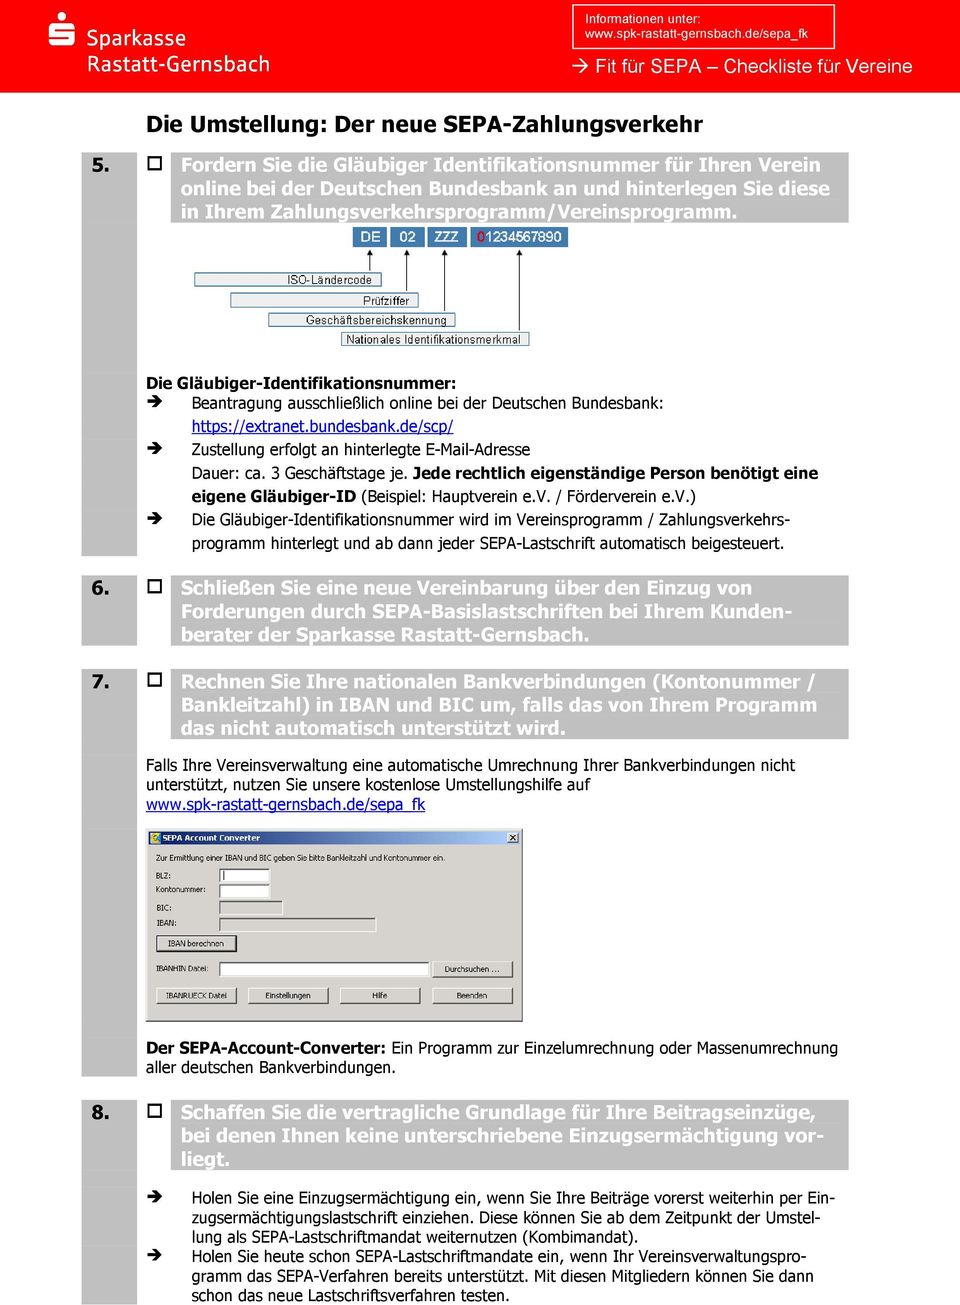 Die Gläubiger-Identifikationsnummer: Beantragung ausschließlich online bei der Deutschen Bundesbank: https://extranet.bundesbank.de/scp/ Zustellung erfolgt an hinterlegte E-Mail-Adresse Dauer: ca.